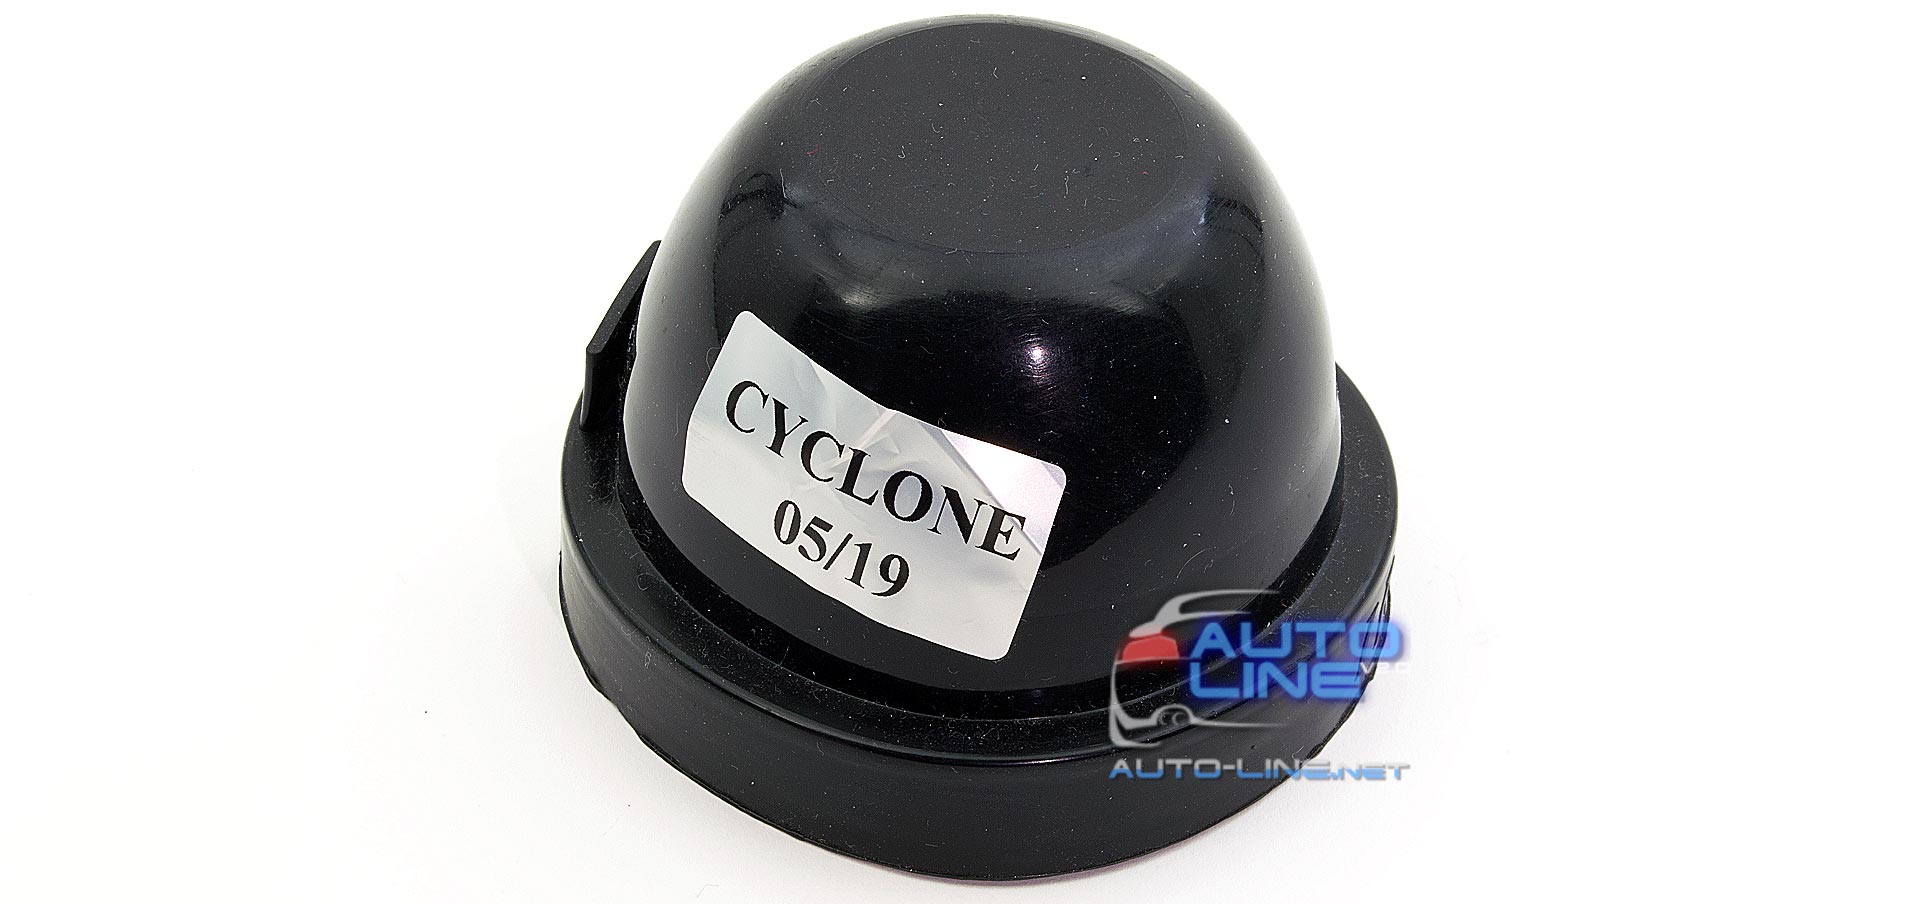 Cyclone CV 5 75mm